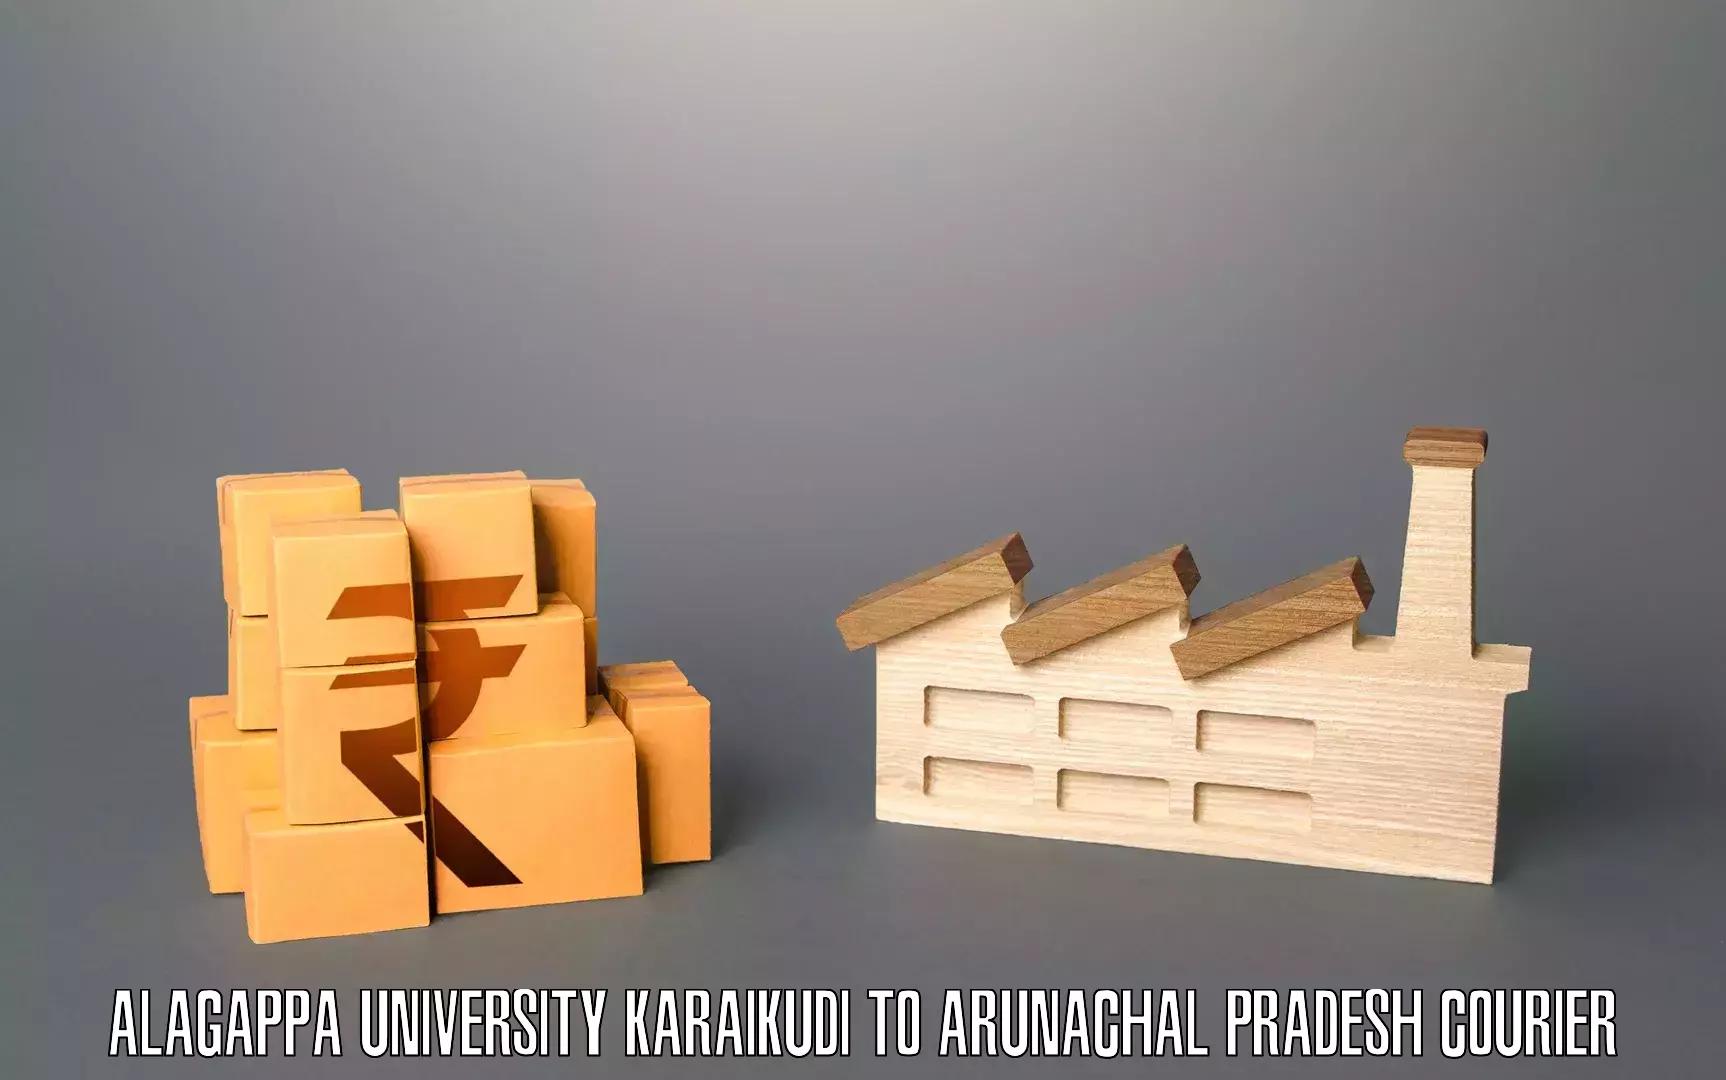 Furniture moving experts Alagappa University Karaikudi to Arunachal Pradesh